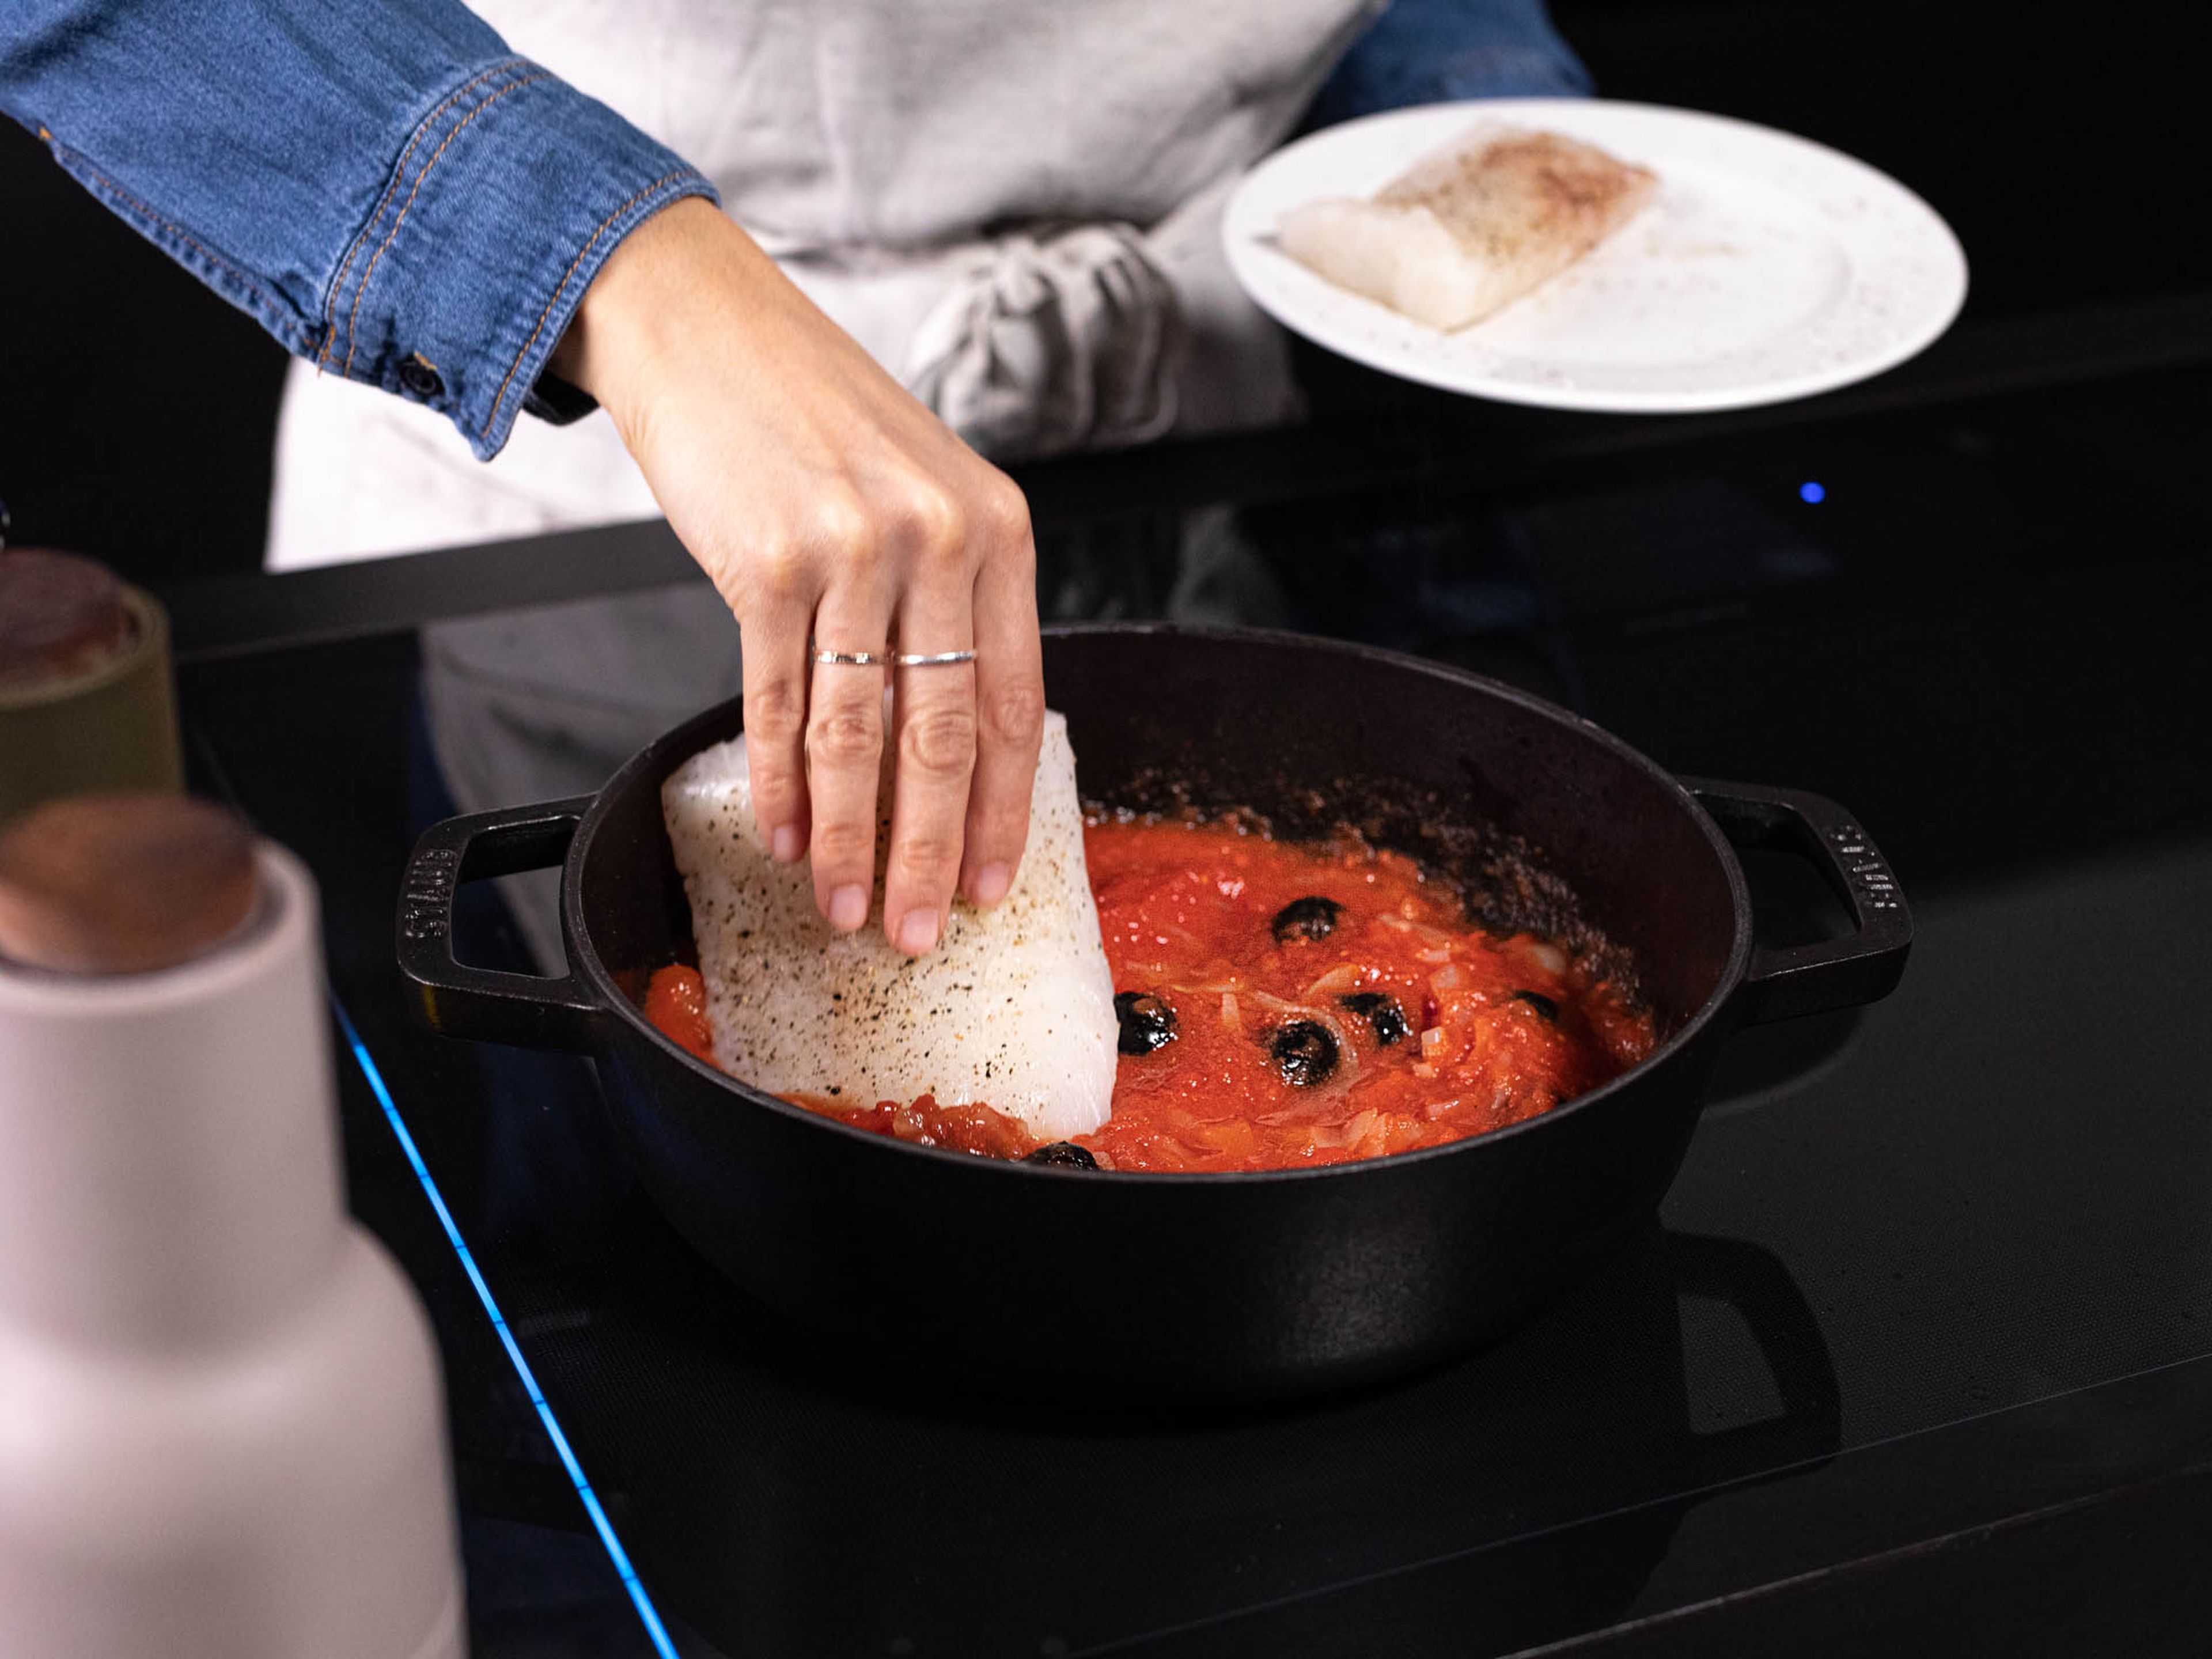 Den Fisch in die Pfanne geben und jedes Filet mit etwas Tomatensoße bedecken. Die Hitze auf mittlere bis niedrige Stufe reduzieren, die Pfanne mit einem Deckel teilweise abdecken und für ca. 8 Min. köcheln lassen, oder bis der Fisch durchgegart ist. Sobald das Filet bei leichtem Druck auseinander fällt, ist der Fisch gar. Sofort mit frischem Basilikum, Chiliflocken und geröstetem Brot servieren. Guten Appetit!